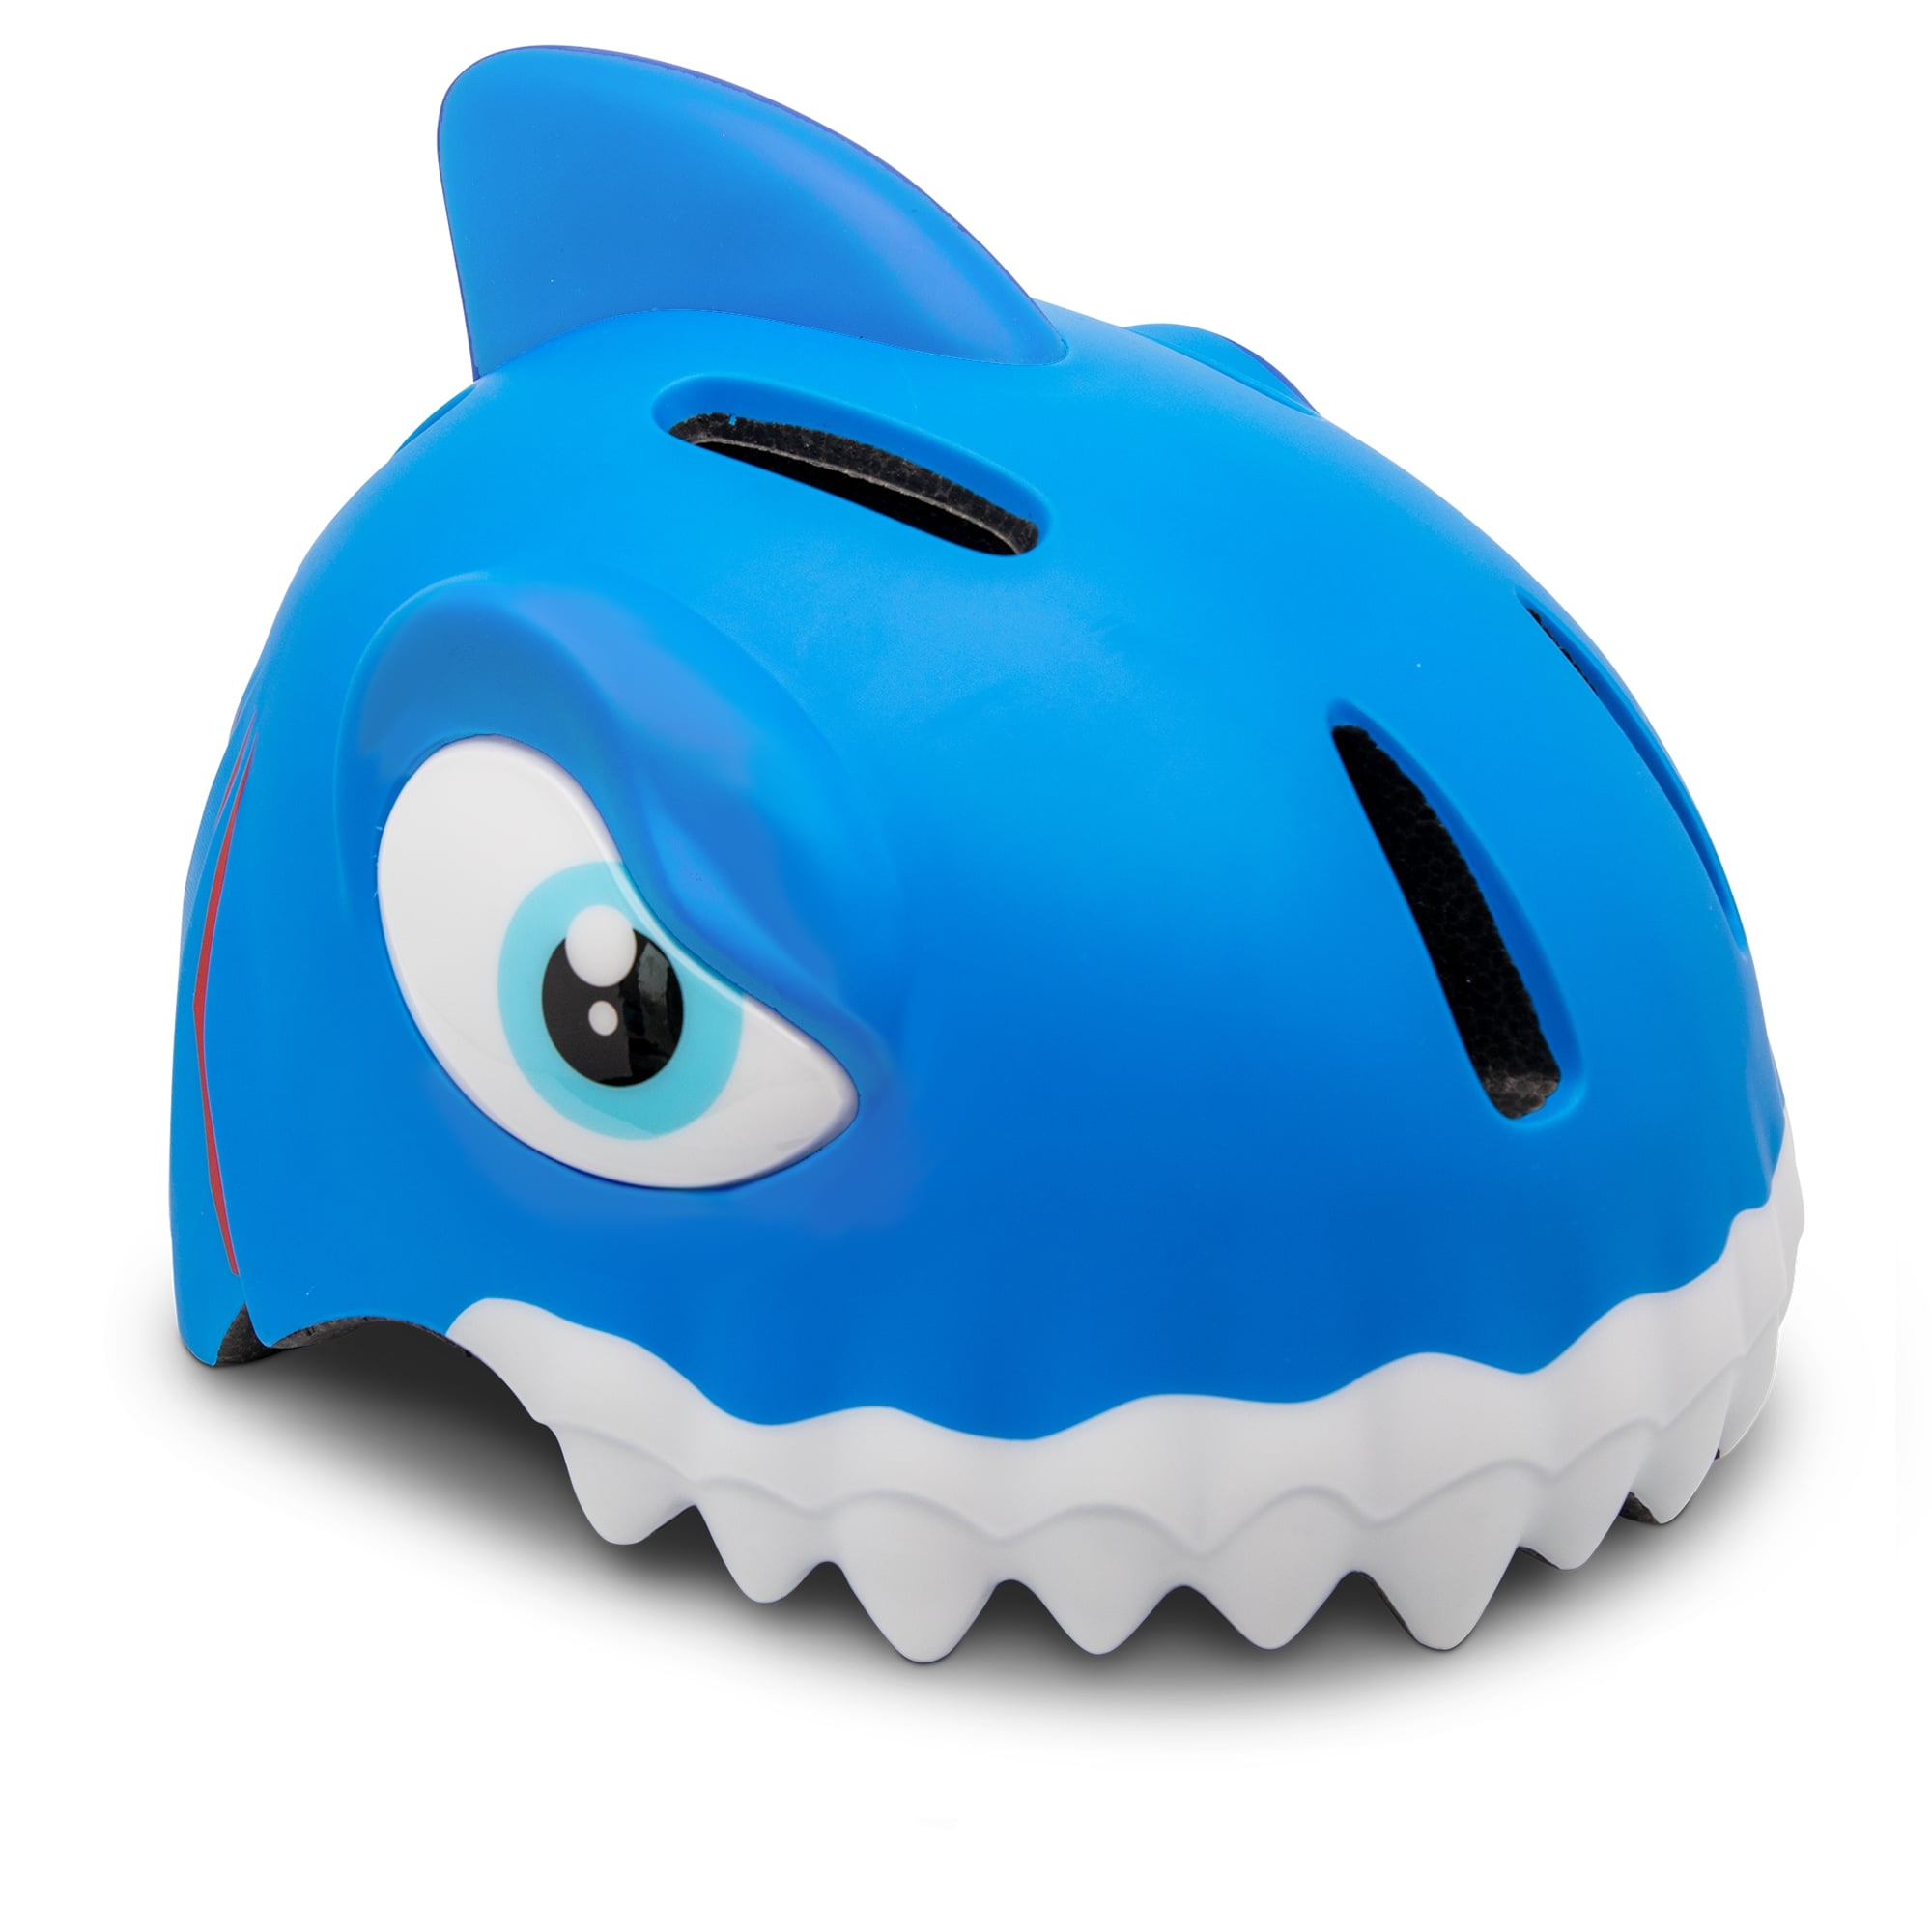 Casco De Bici Crazy Safety Tiburón Azul Certificado En1078 - azul - 